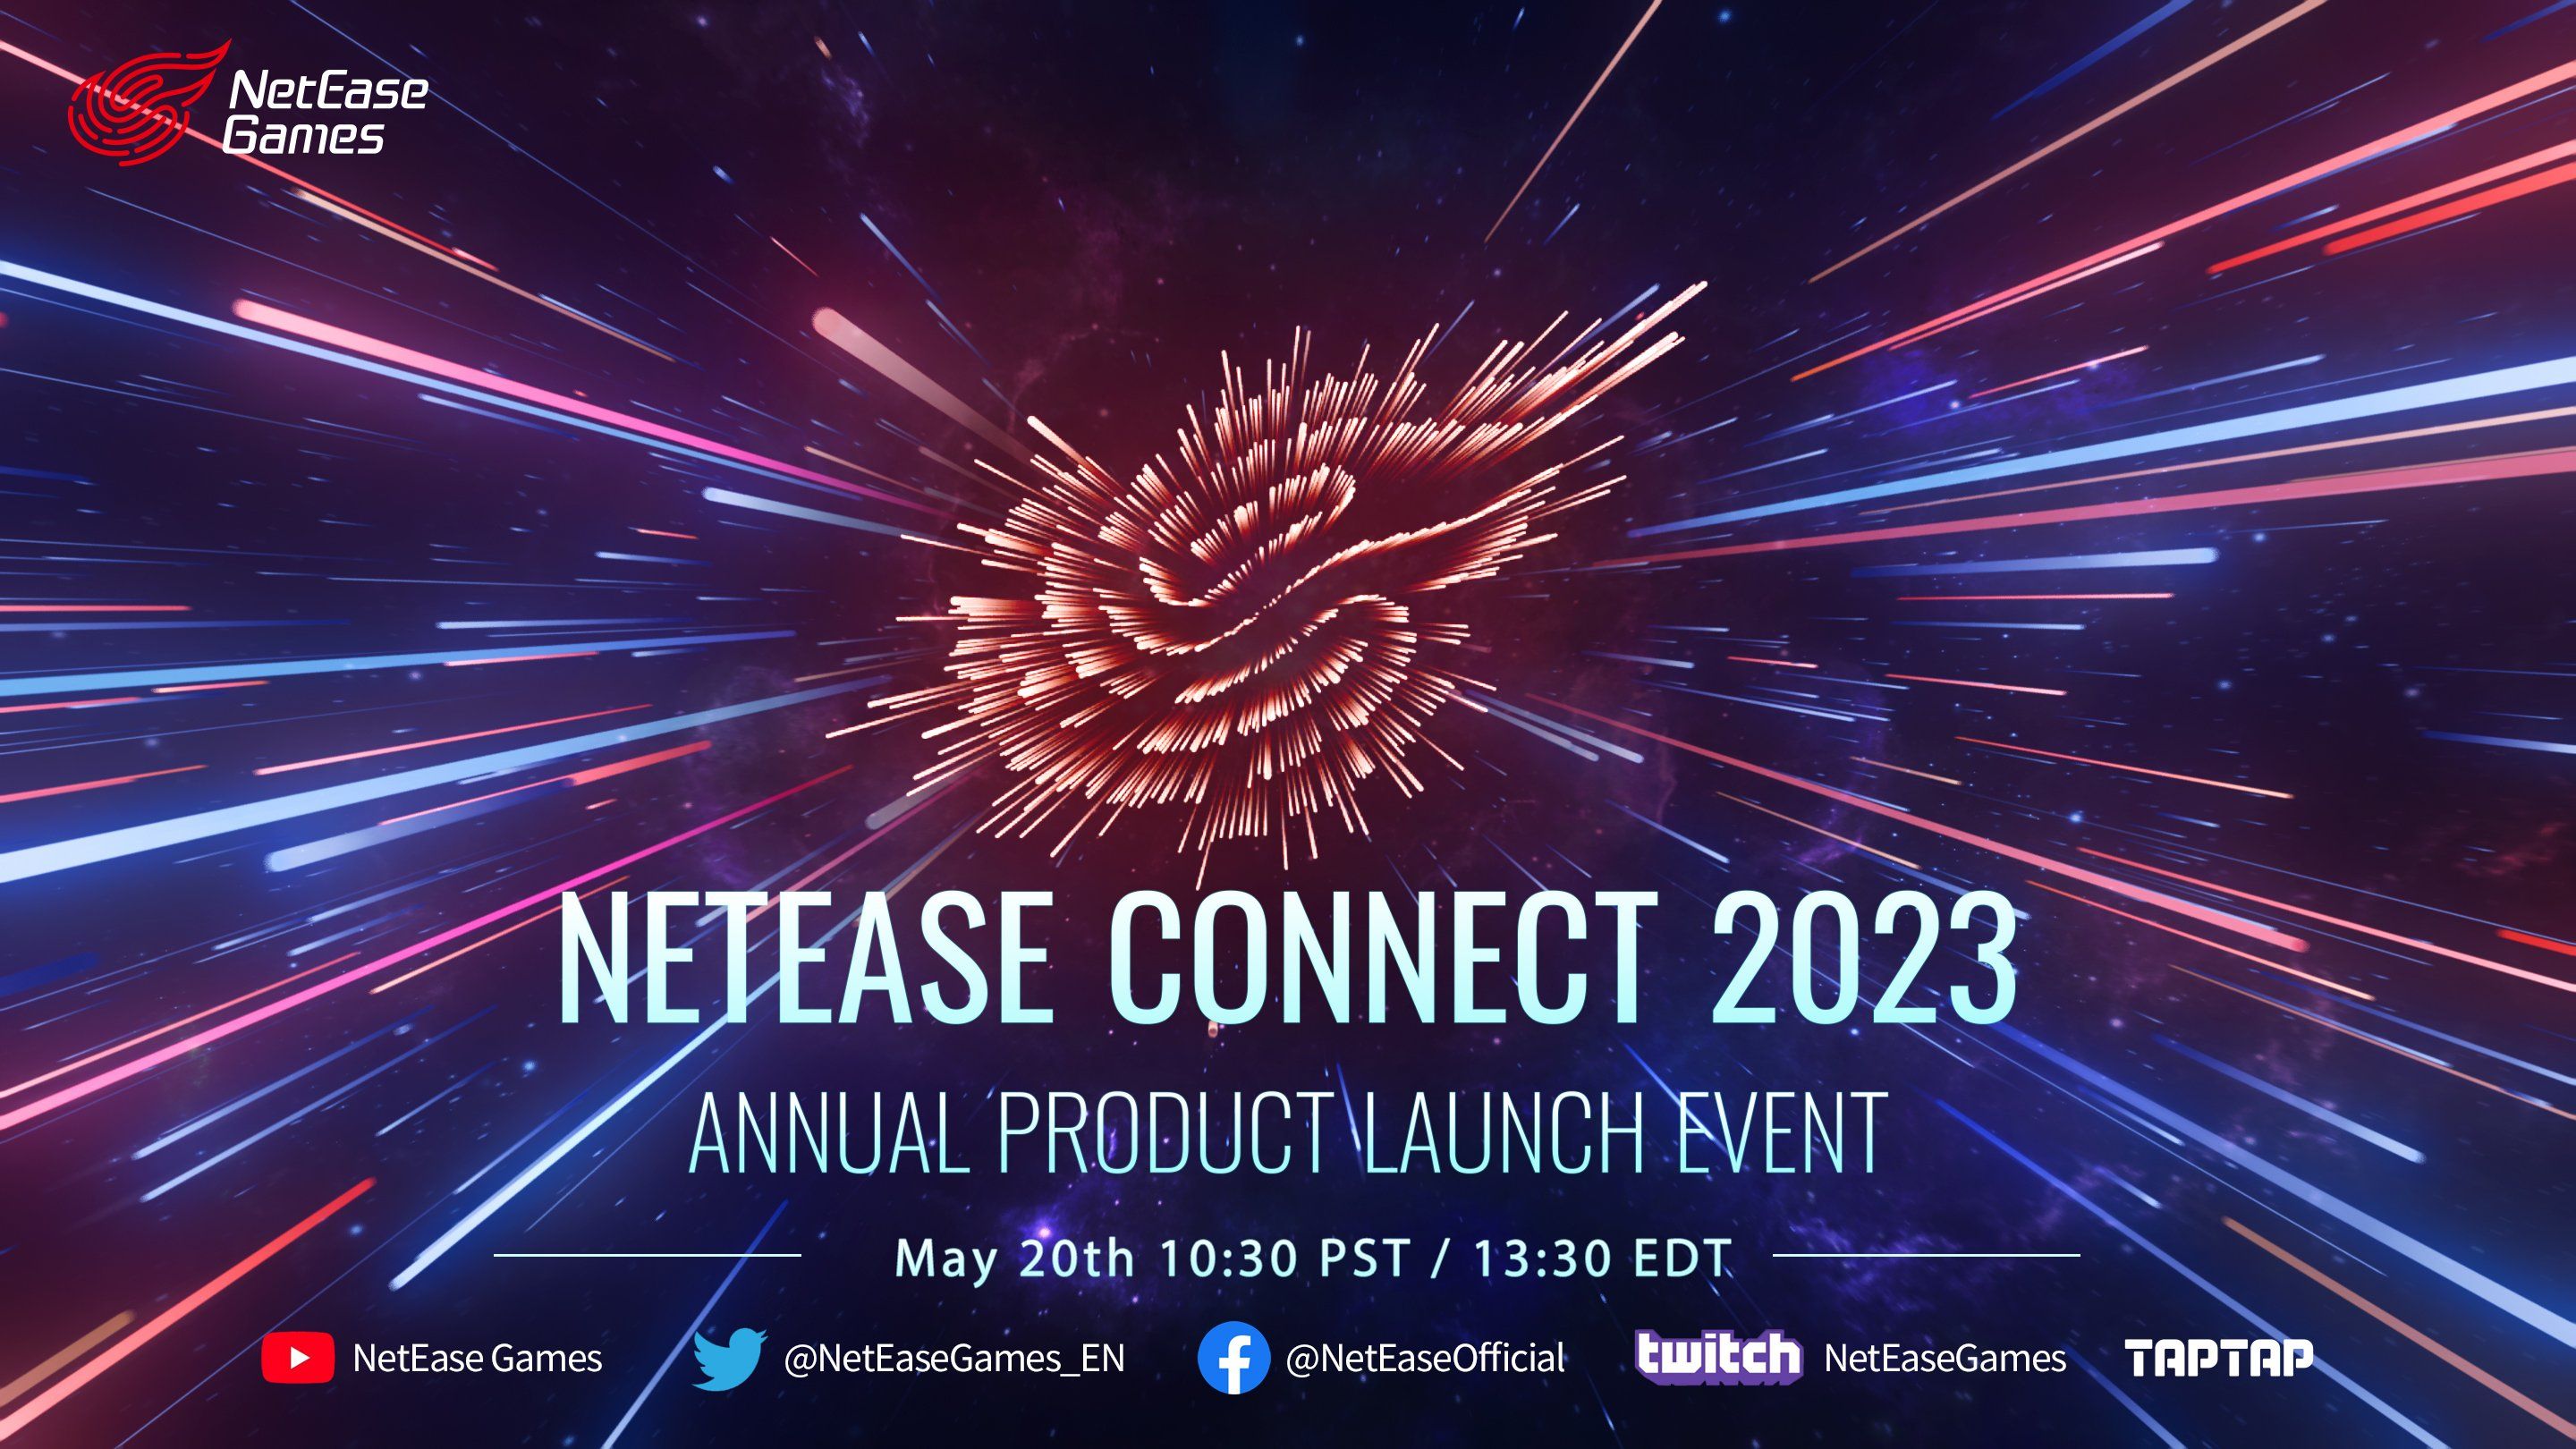 NetEase anuncia el lanzamiento mundial de Eggy Party